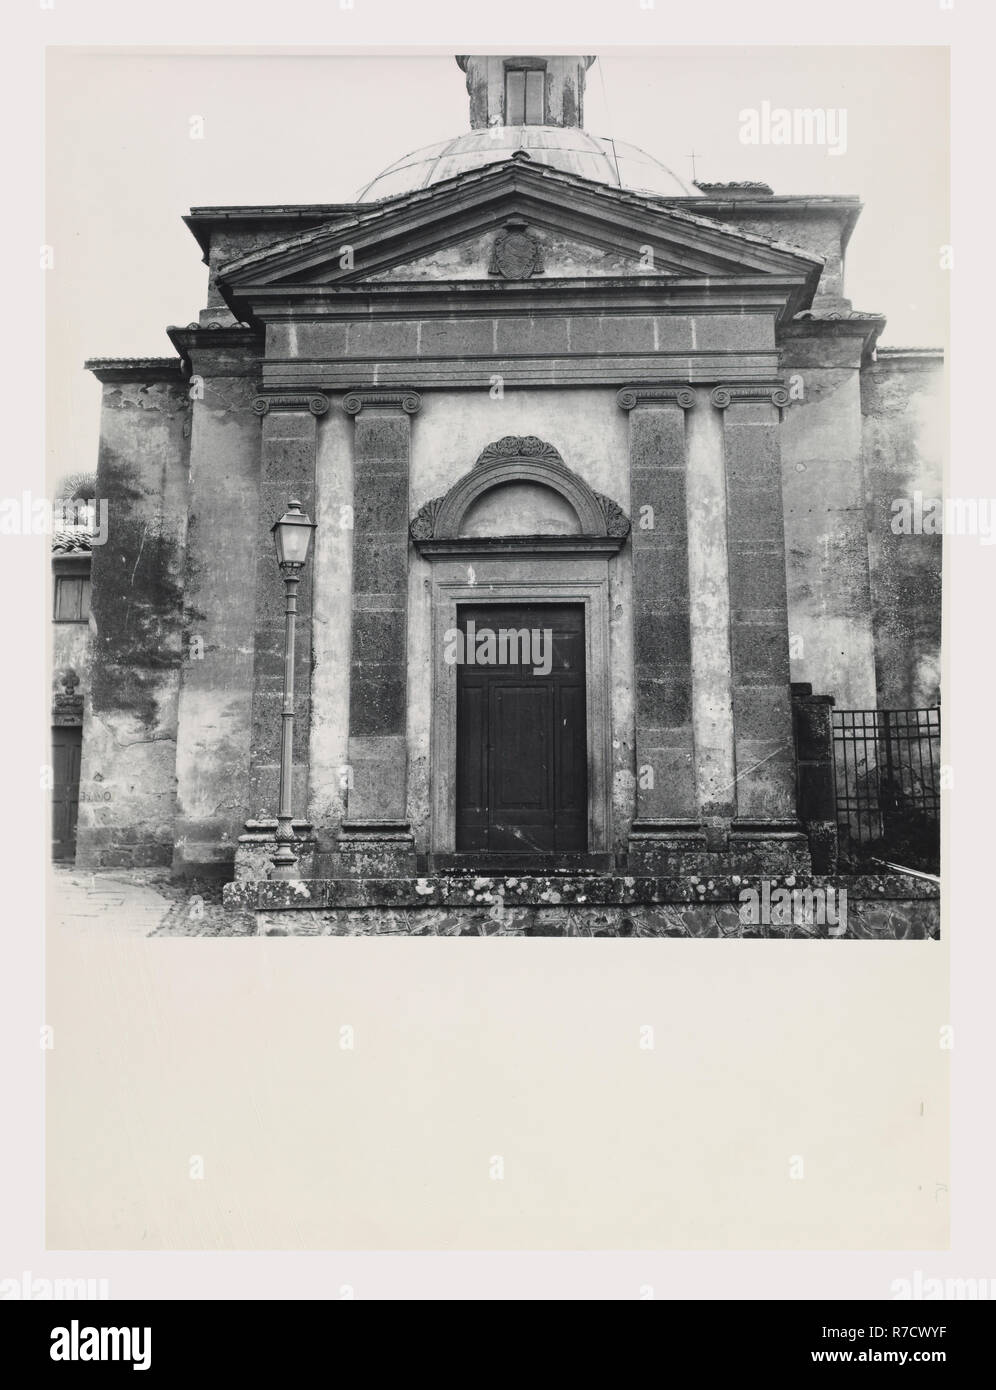 Latium Viterbo Bagnoregio S. Bonaventura, dies ist mein Italien, die italienische Land der Geschichte und der Ausblick auf die Kirche aus dem 19. Jahrhundert Fassade und Flanke Stockfoto